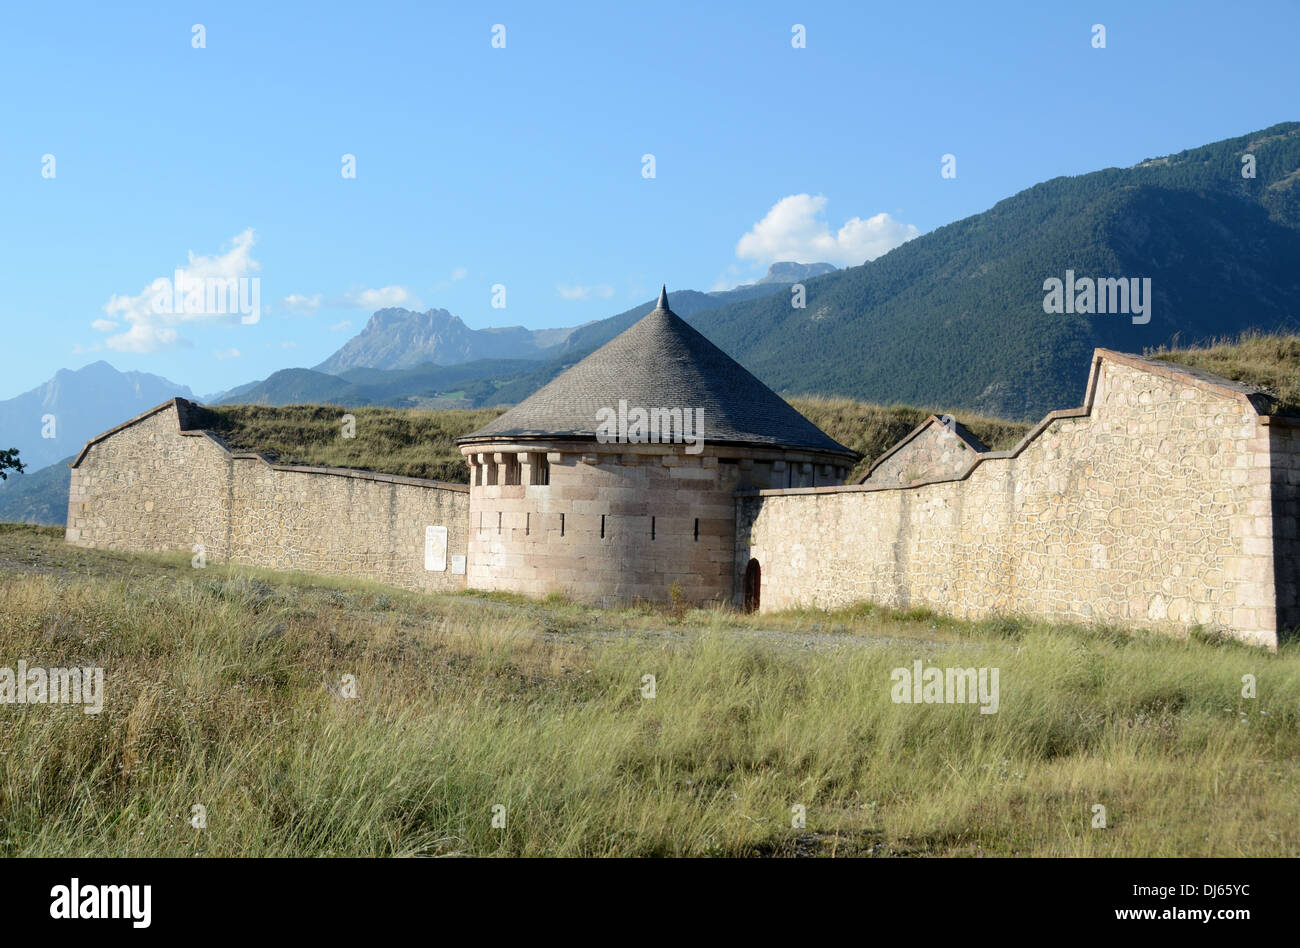 Las fortificaciones de Vauban y el Mirador de la Ciudad Militar amurallada de Mont-Dauphin Hautes-Alpes Francia Foto de stock